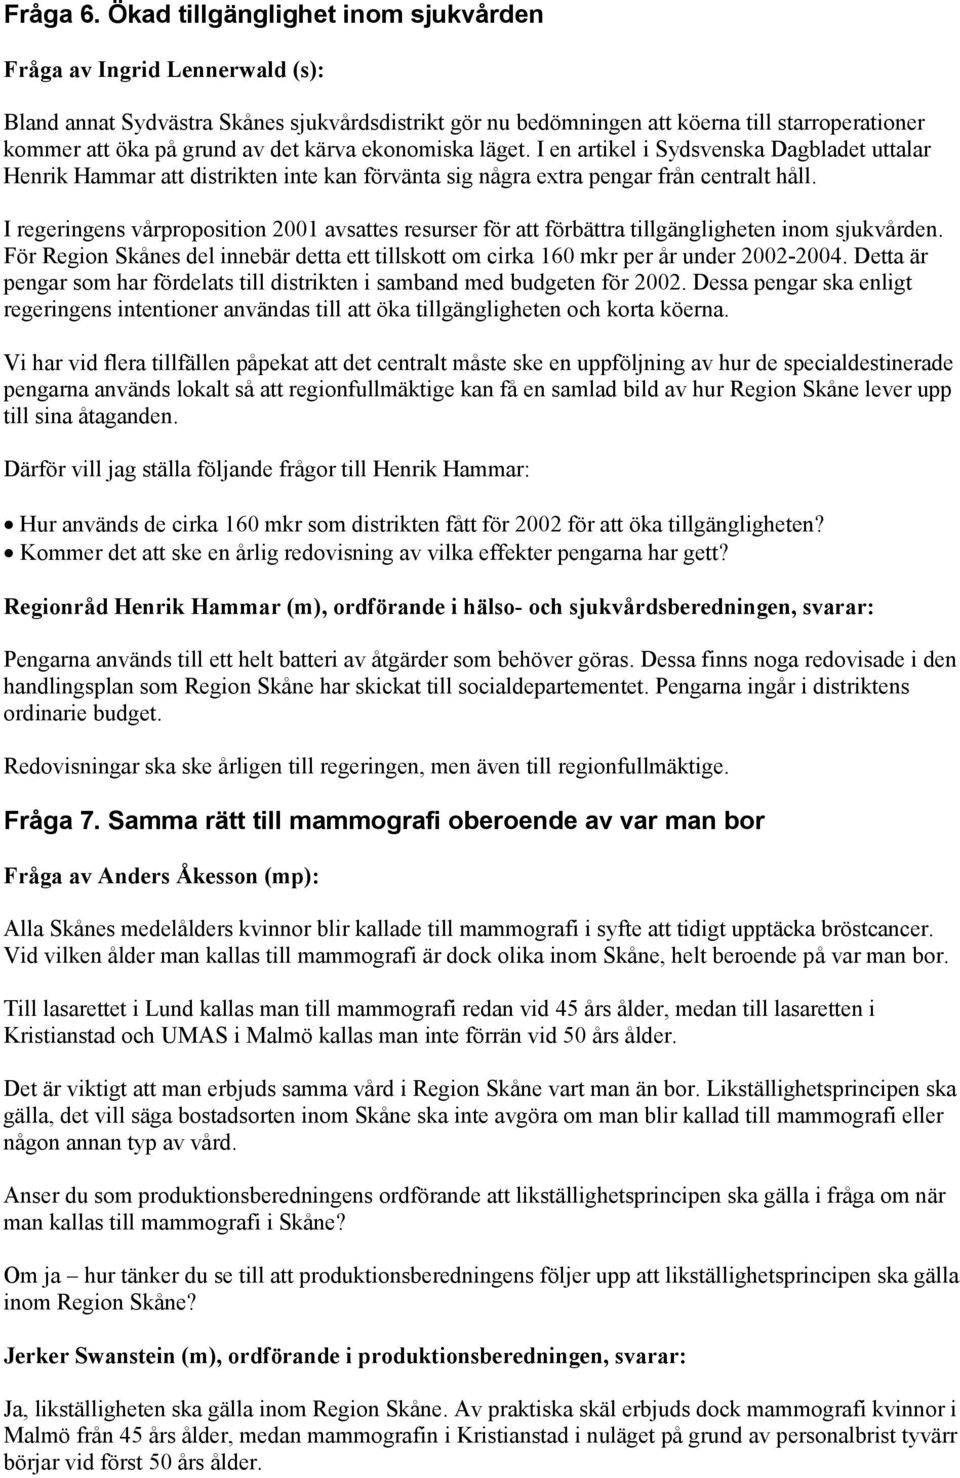 kärva ekonomiska läget. I en artikel i Sydsvenska Dagbladet uttalar Henrik Hammar att distrikten inte kan förvänta sig några extra pengar från centralt håll.